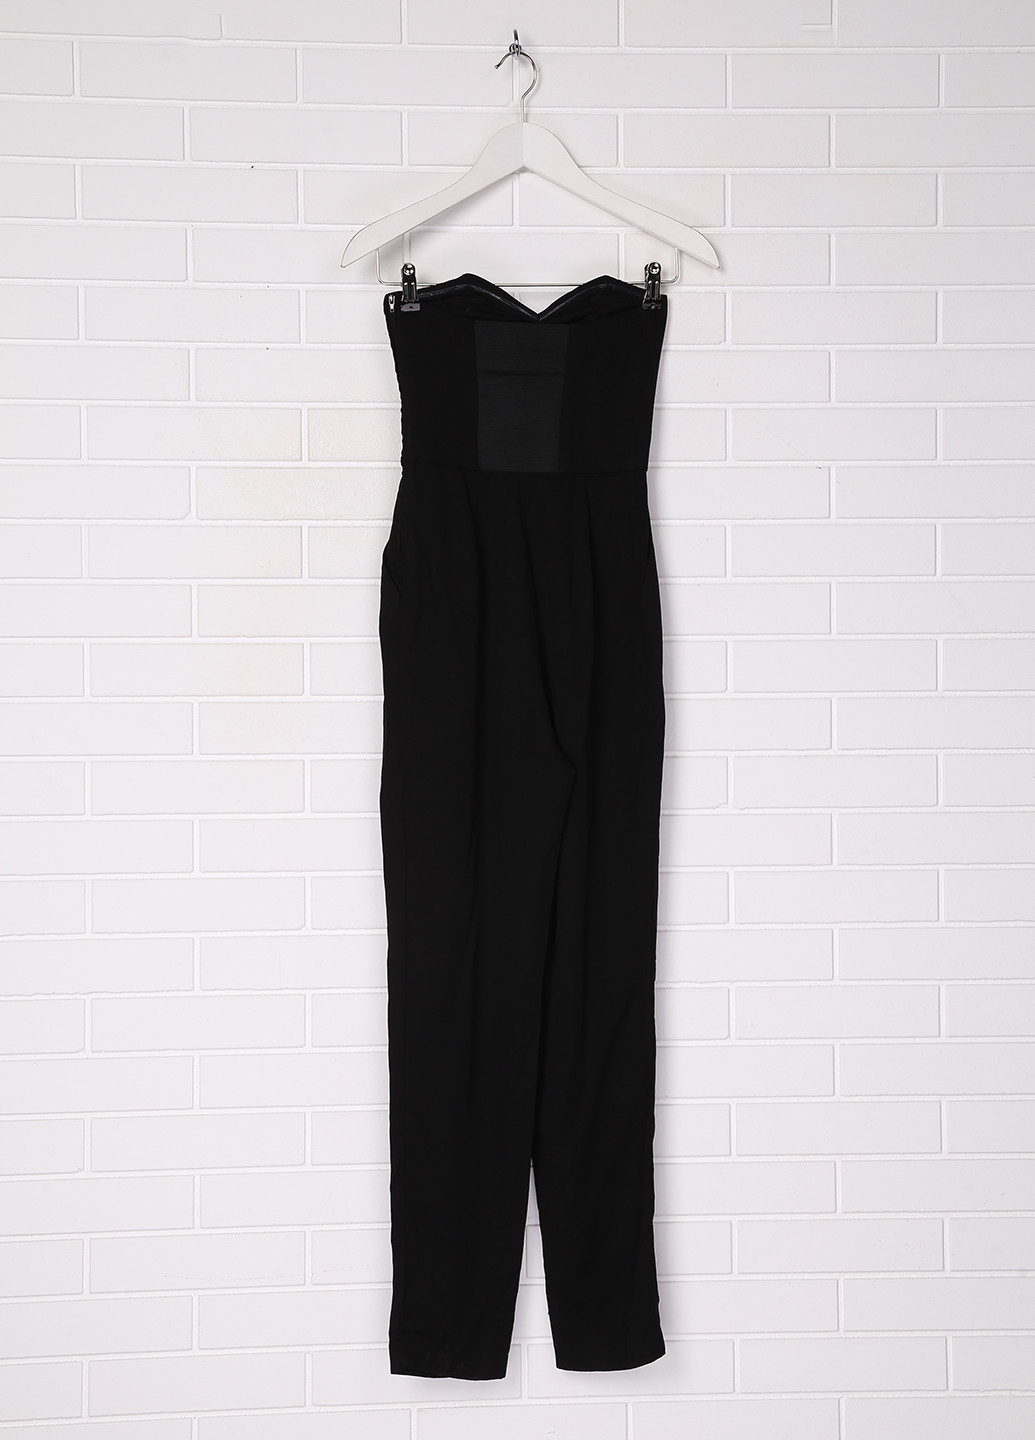 Комбинезон H&M комбинезон-брюки однотонный чёрный деловой